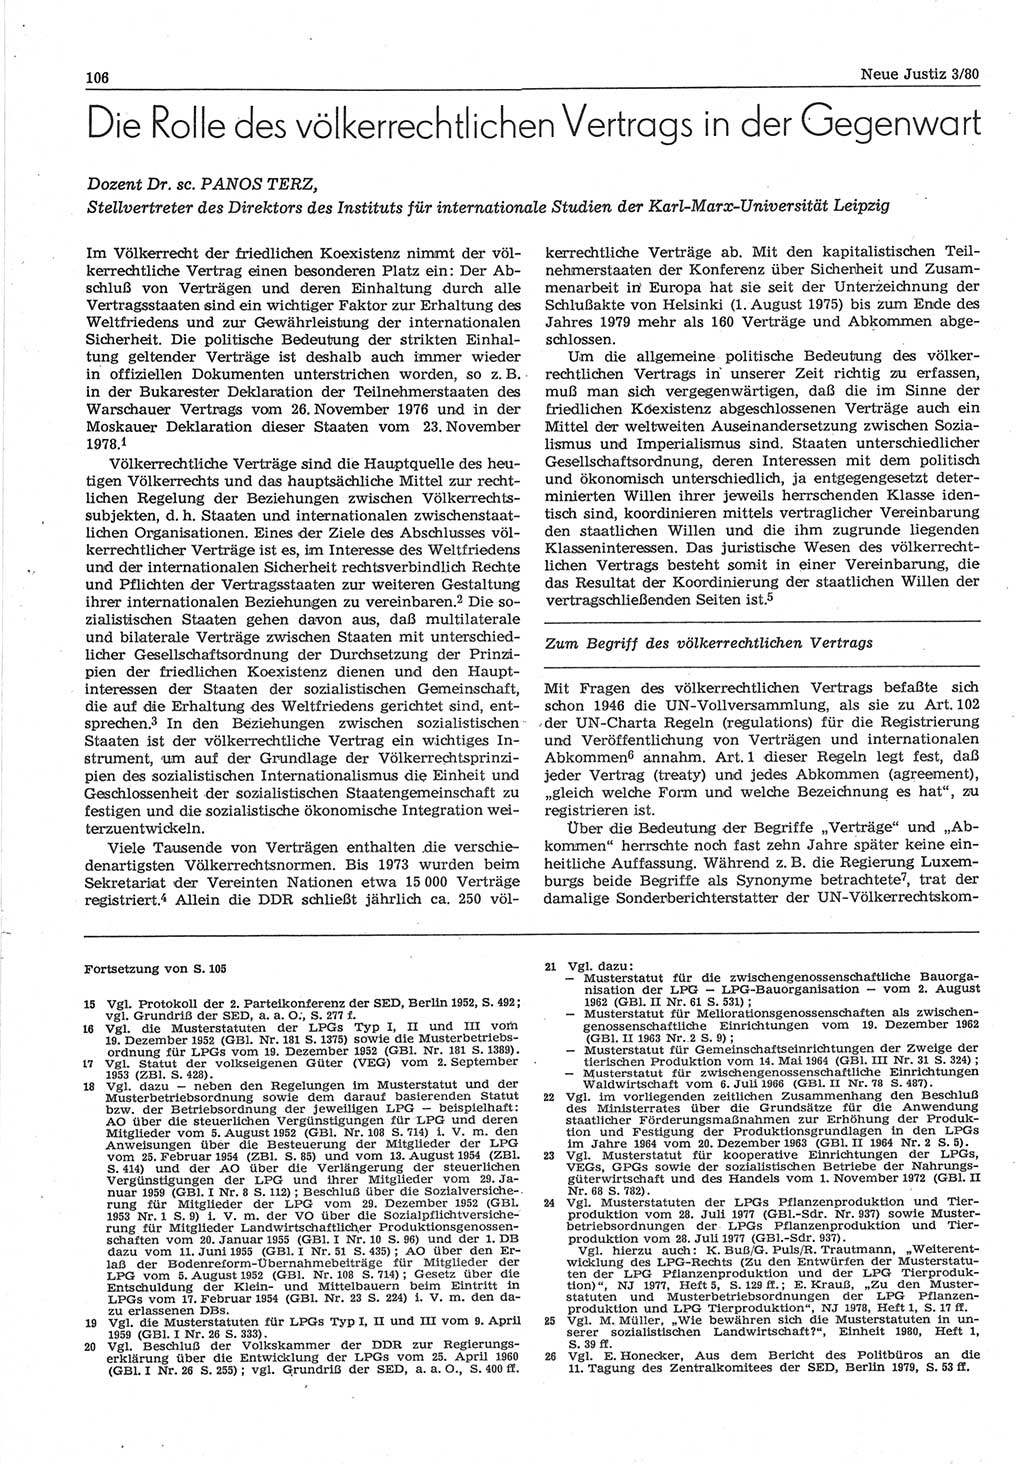 Neue Justiz (NJ), Zeitschrift für sozialistisches Recht und Gesetzlichkeit [Deutsche Demokratische Republik (DDR)], 34. Jahrgang 1980, Seite 106 (NJ DDR 1980, S. 106)